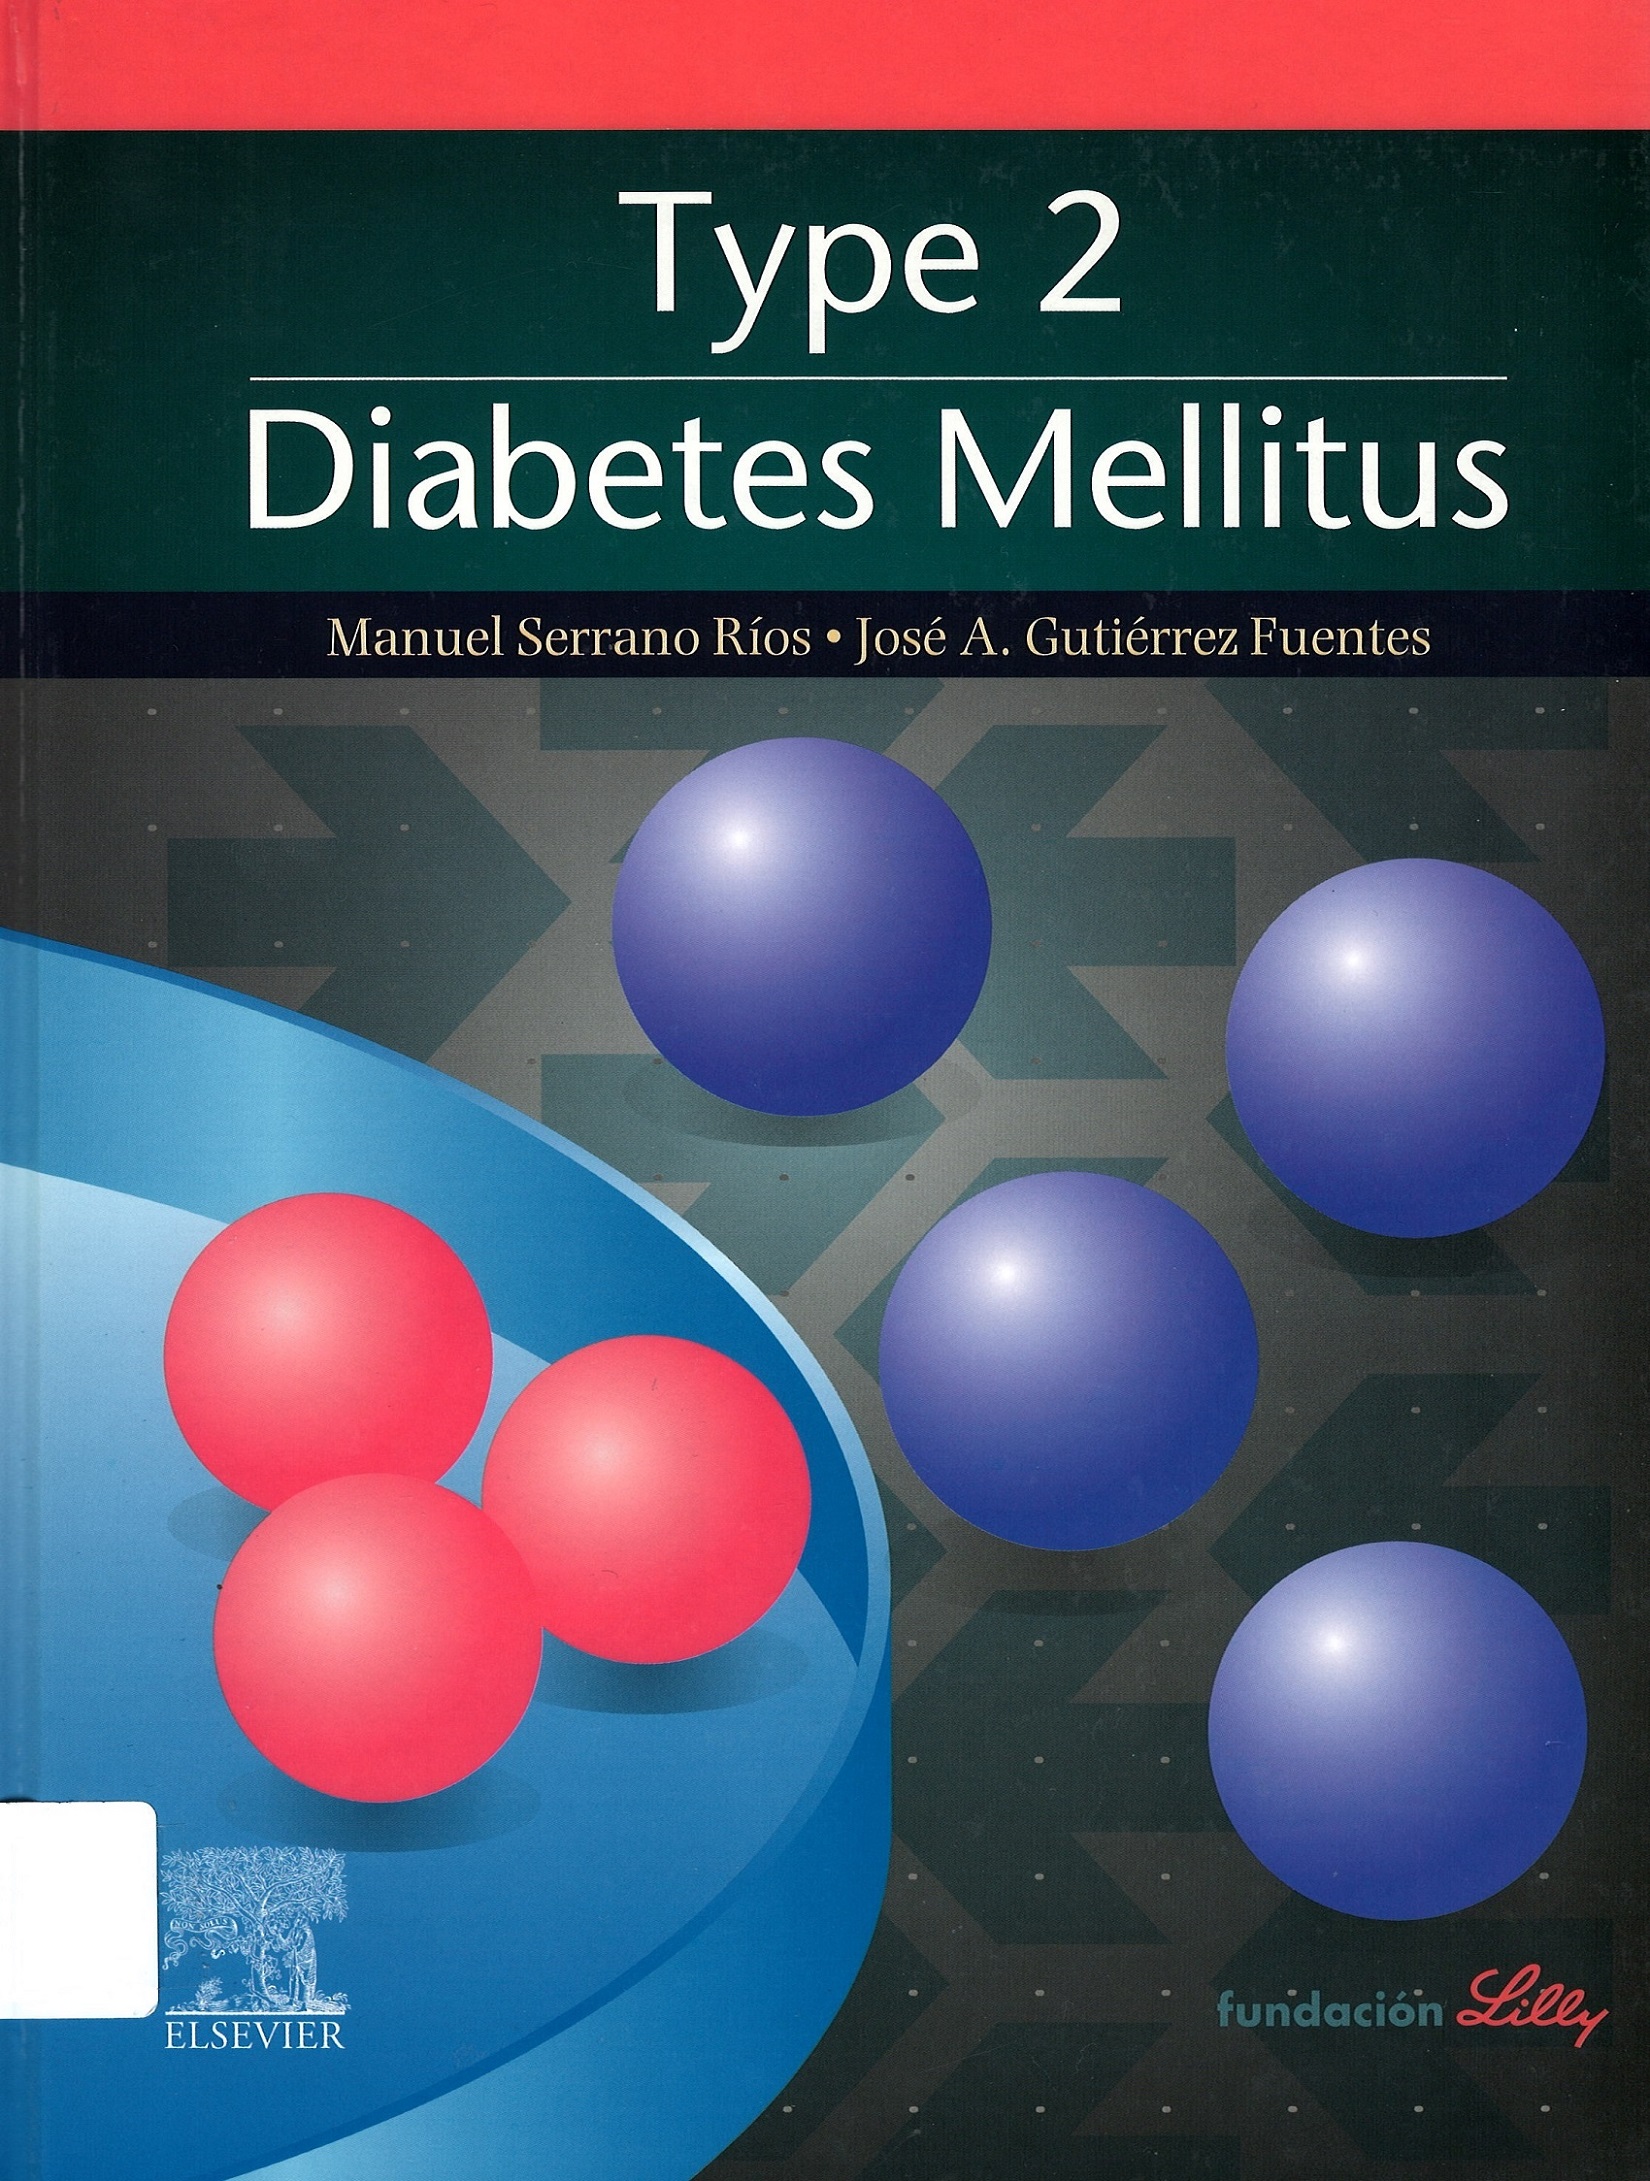 Imagen de portada del libro Type 2 diabetes mellitus